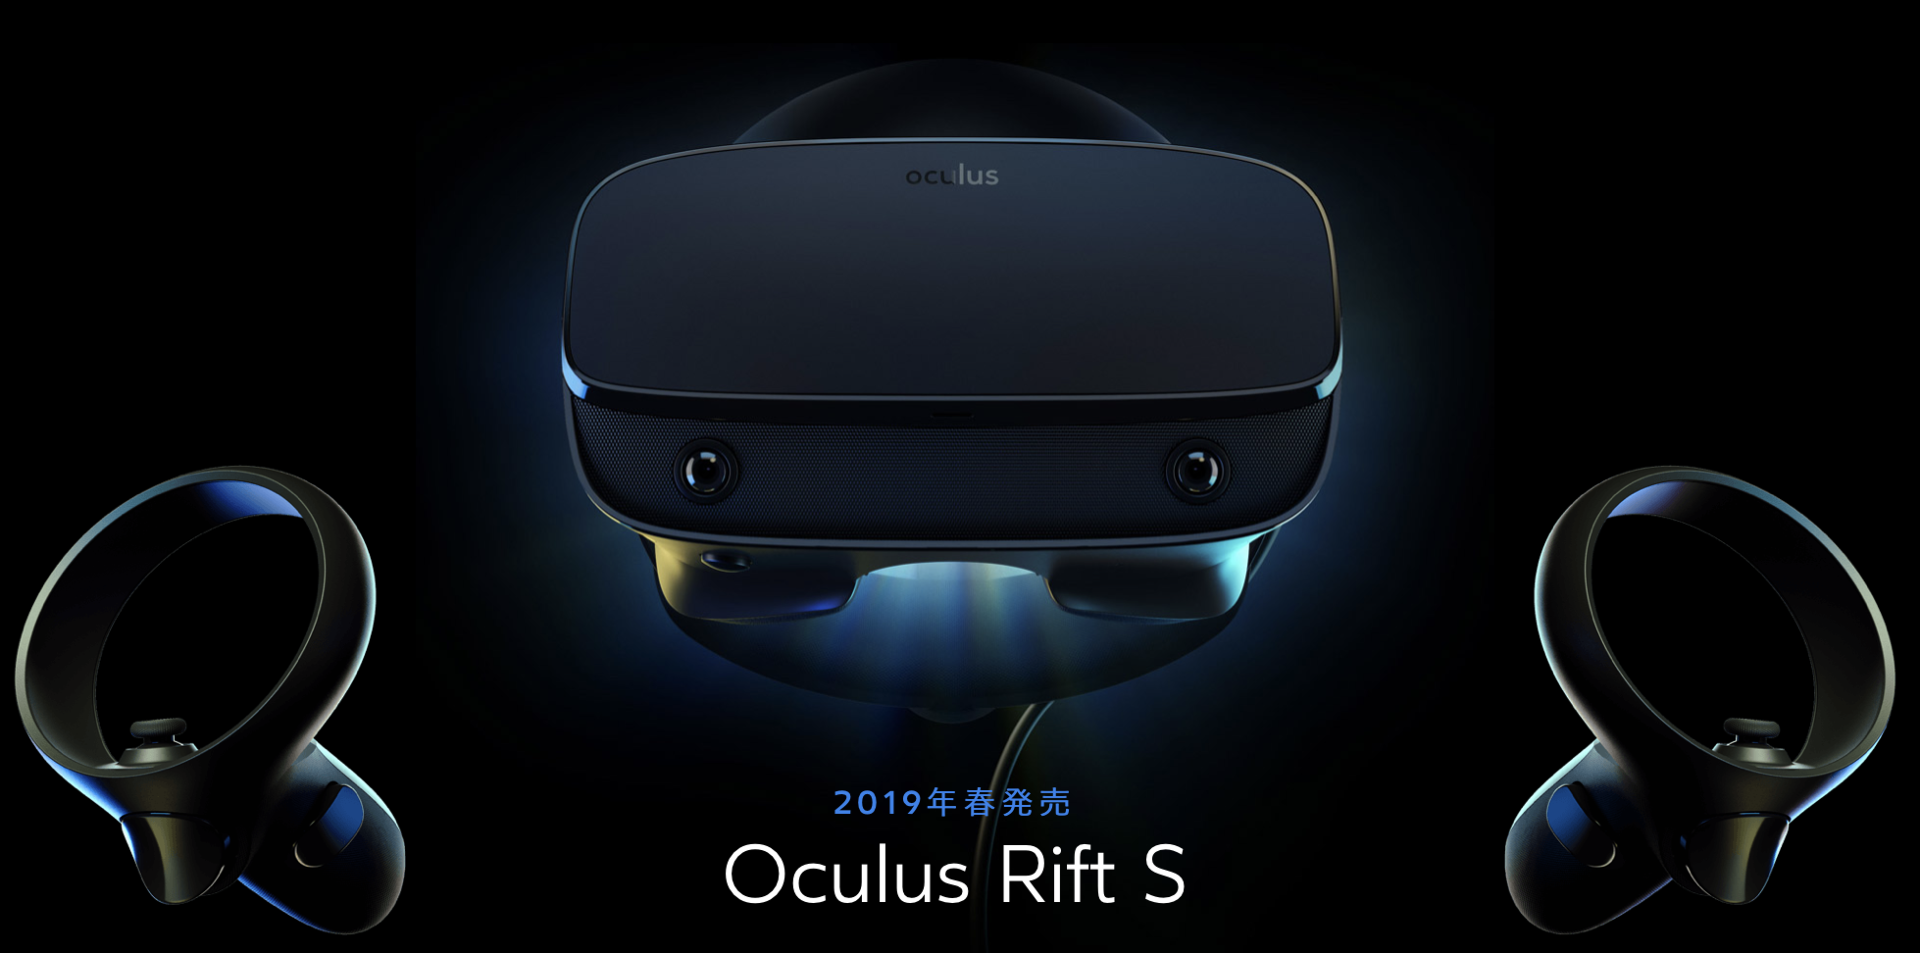 外部センサー不要のPC向けOculus Rift S、今春発売 - ITmedia NEWS